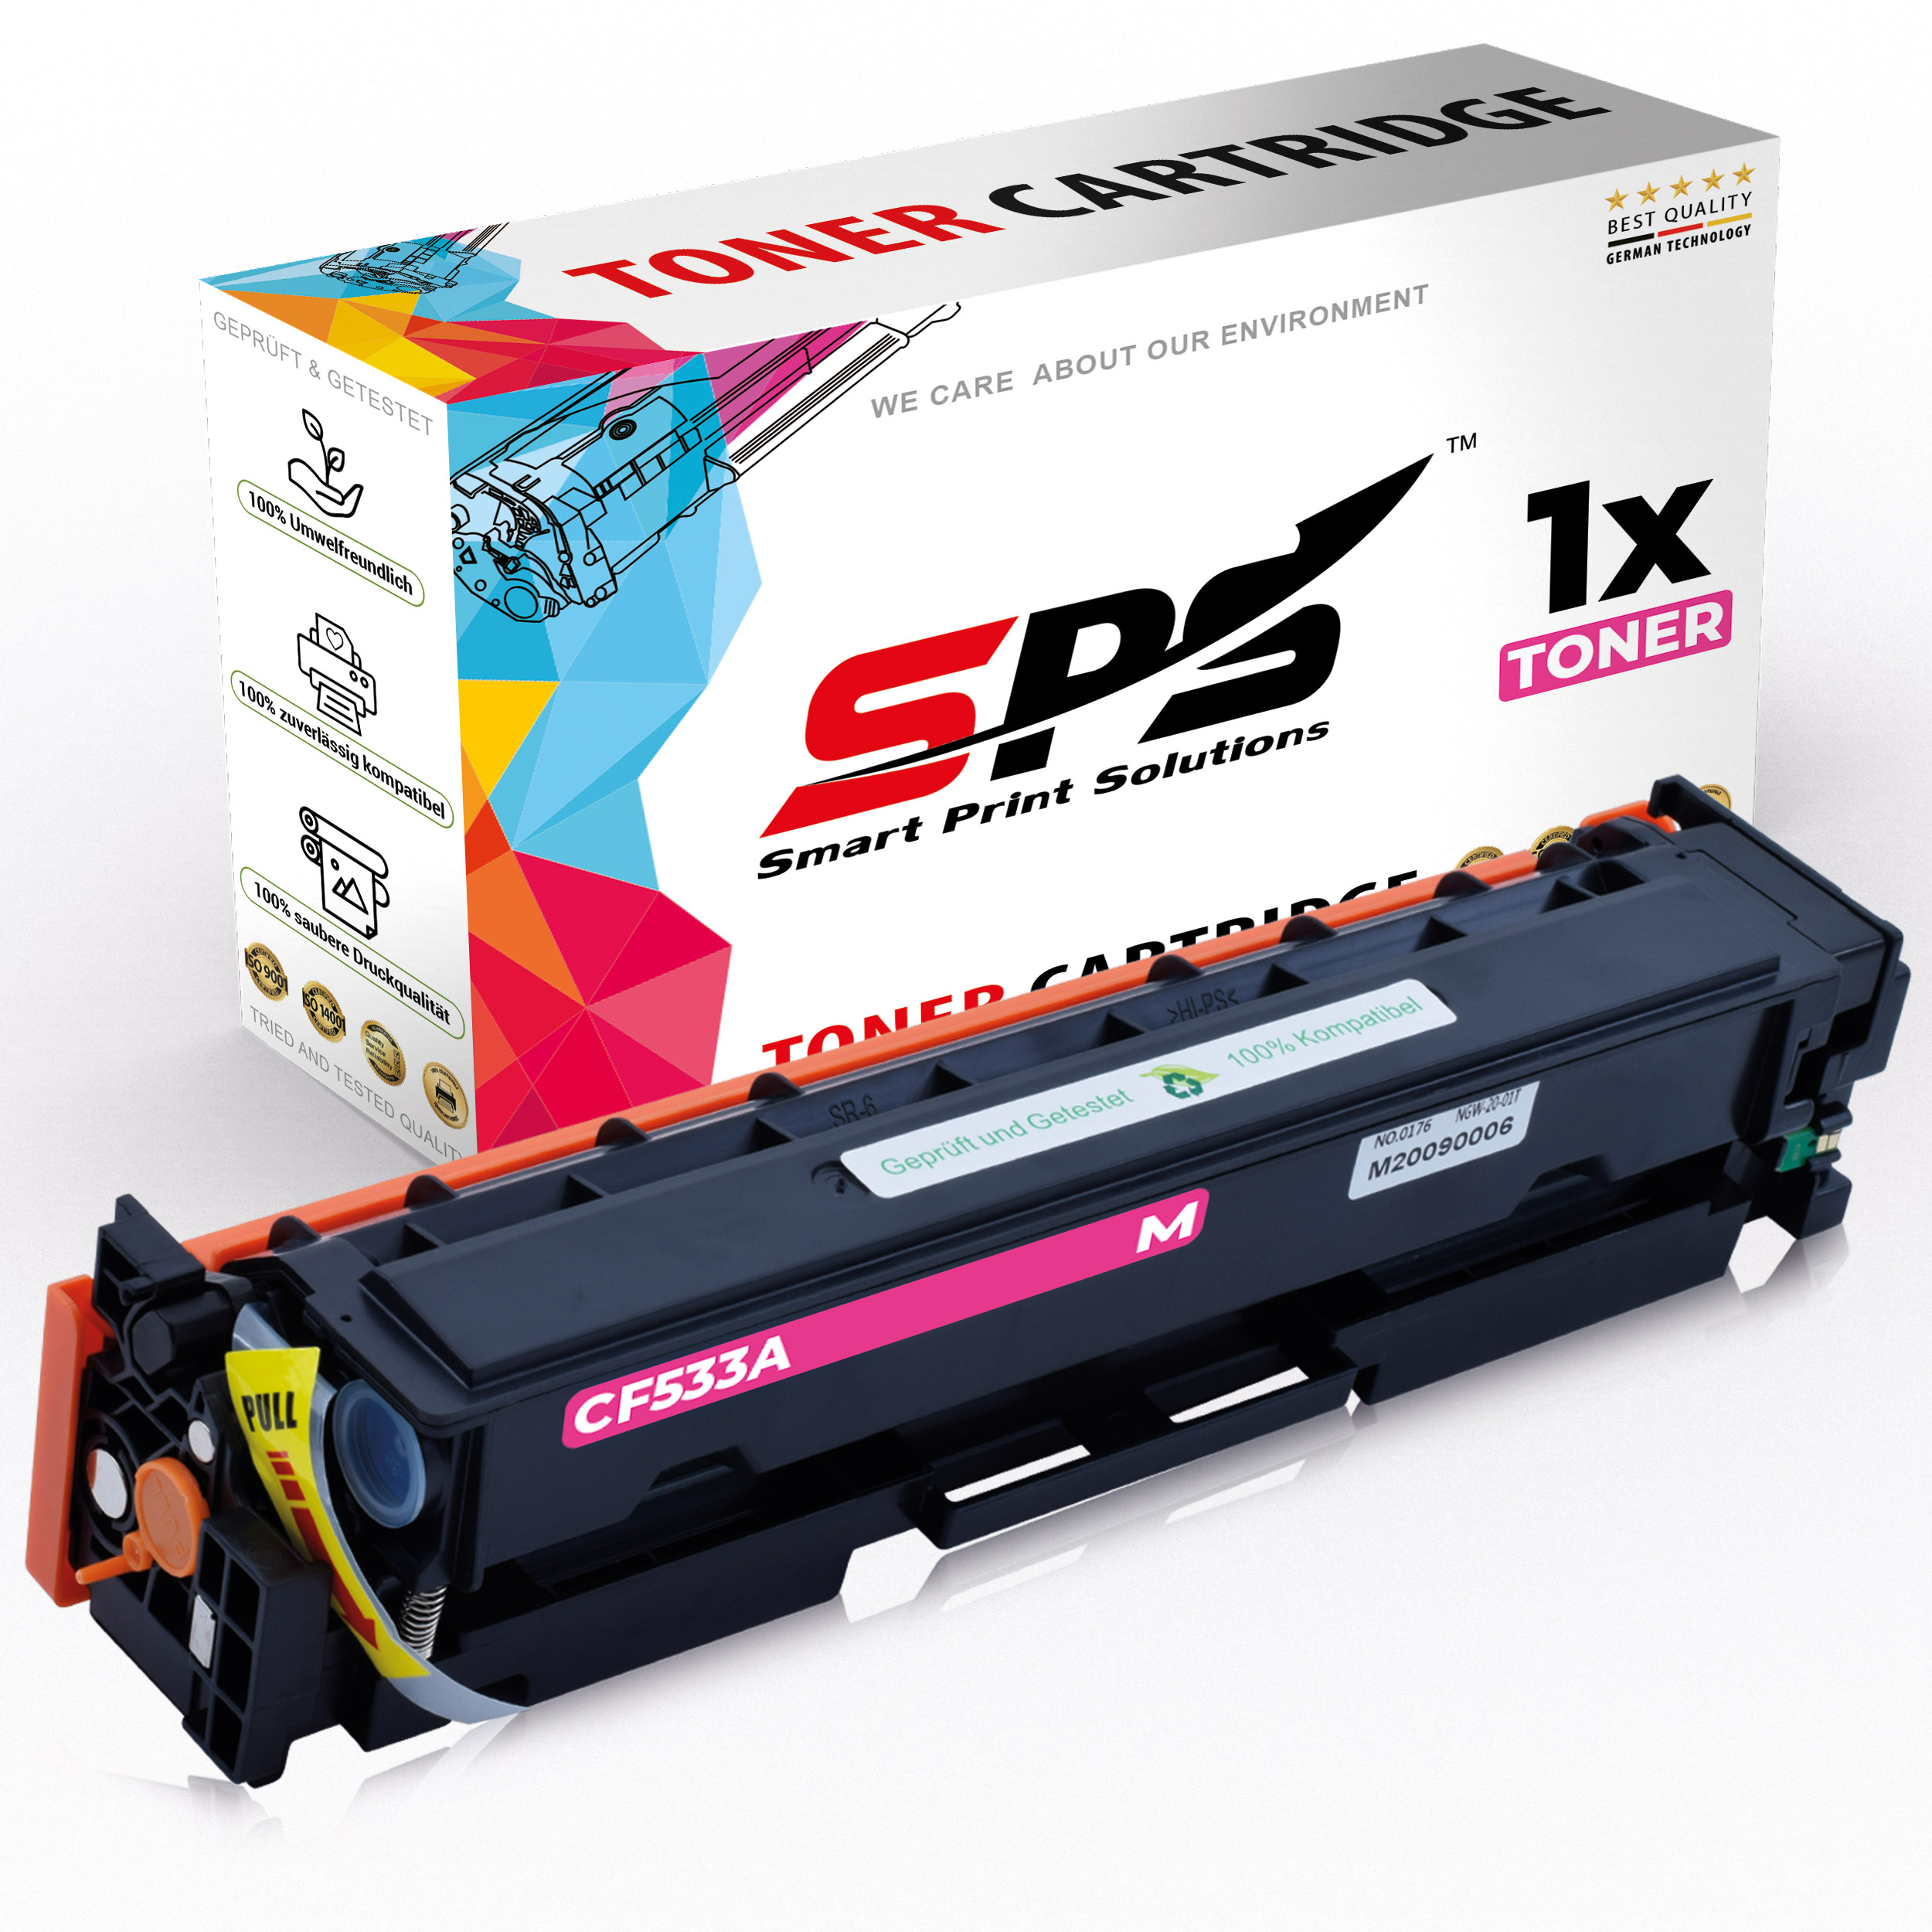 SPS MFP Toner S-16651 M180N) / Color (205A CF533A Laserjet Pro Magenta